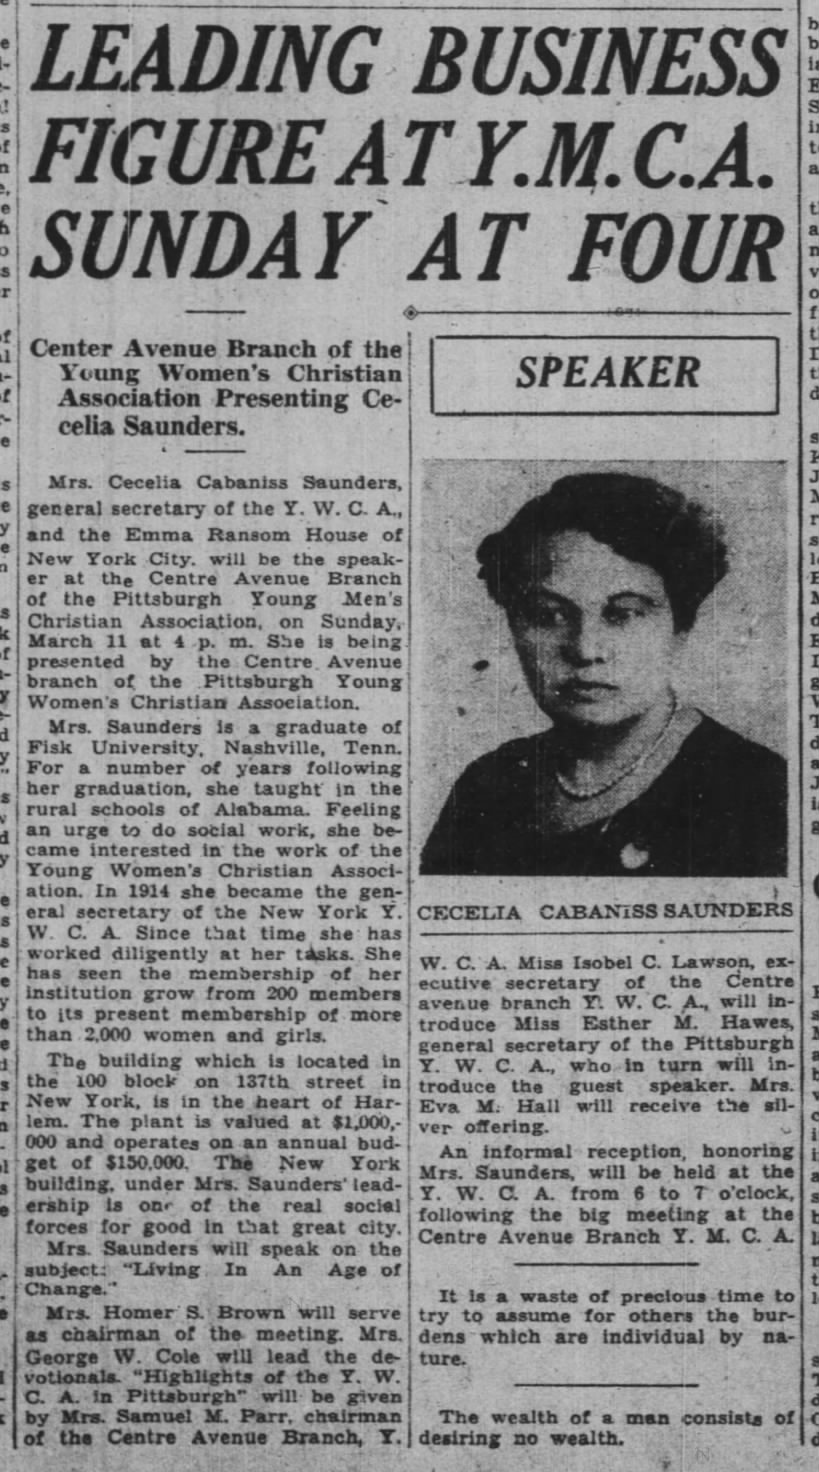 Cecelia Cabaniss Saunders speaks in Pittsburgh (1934).